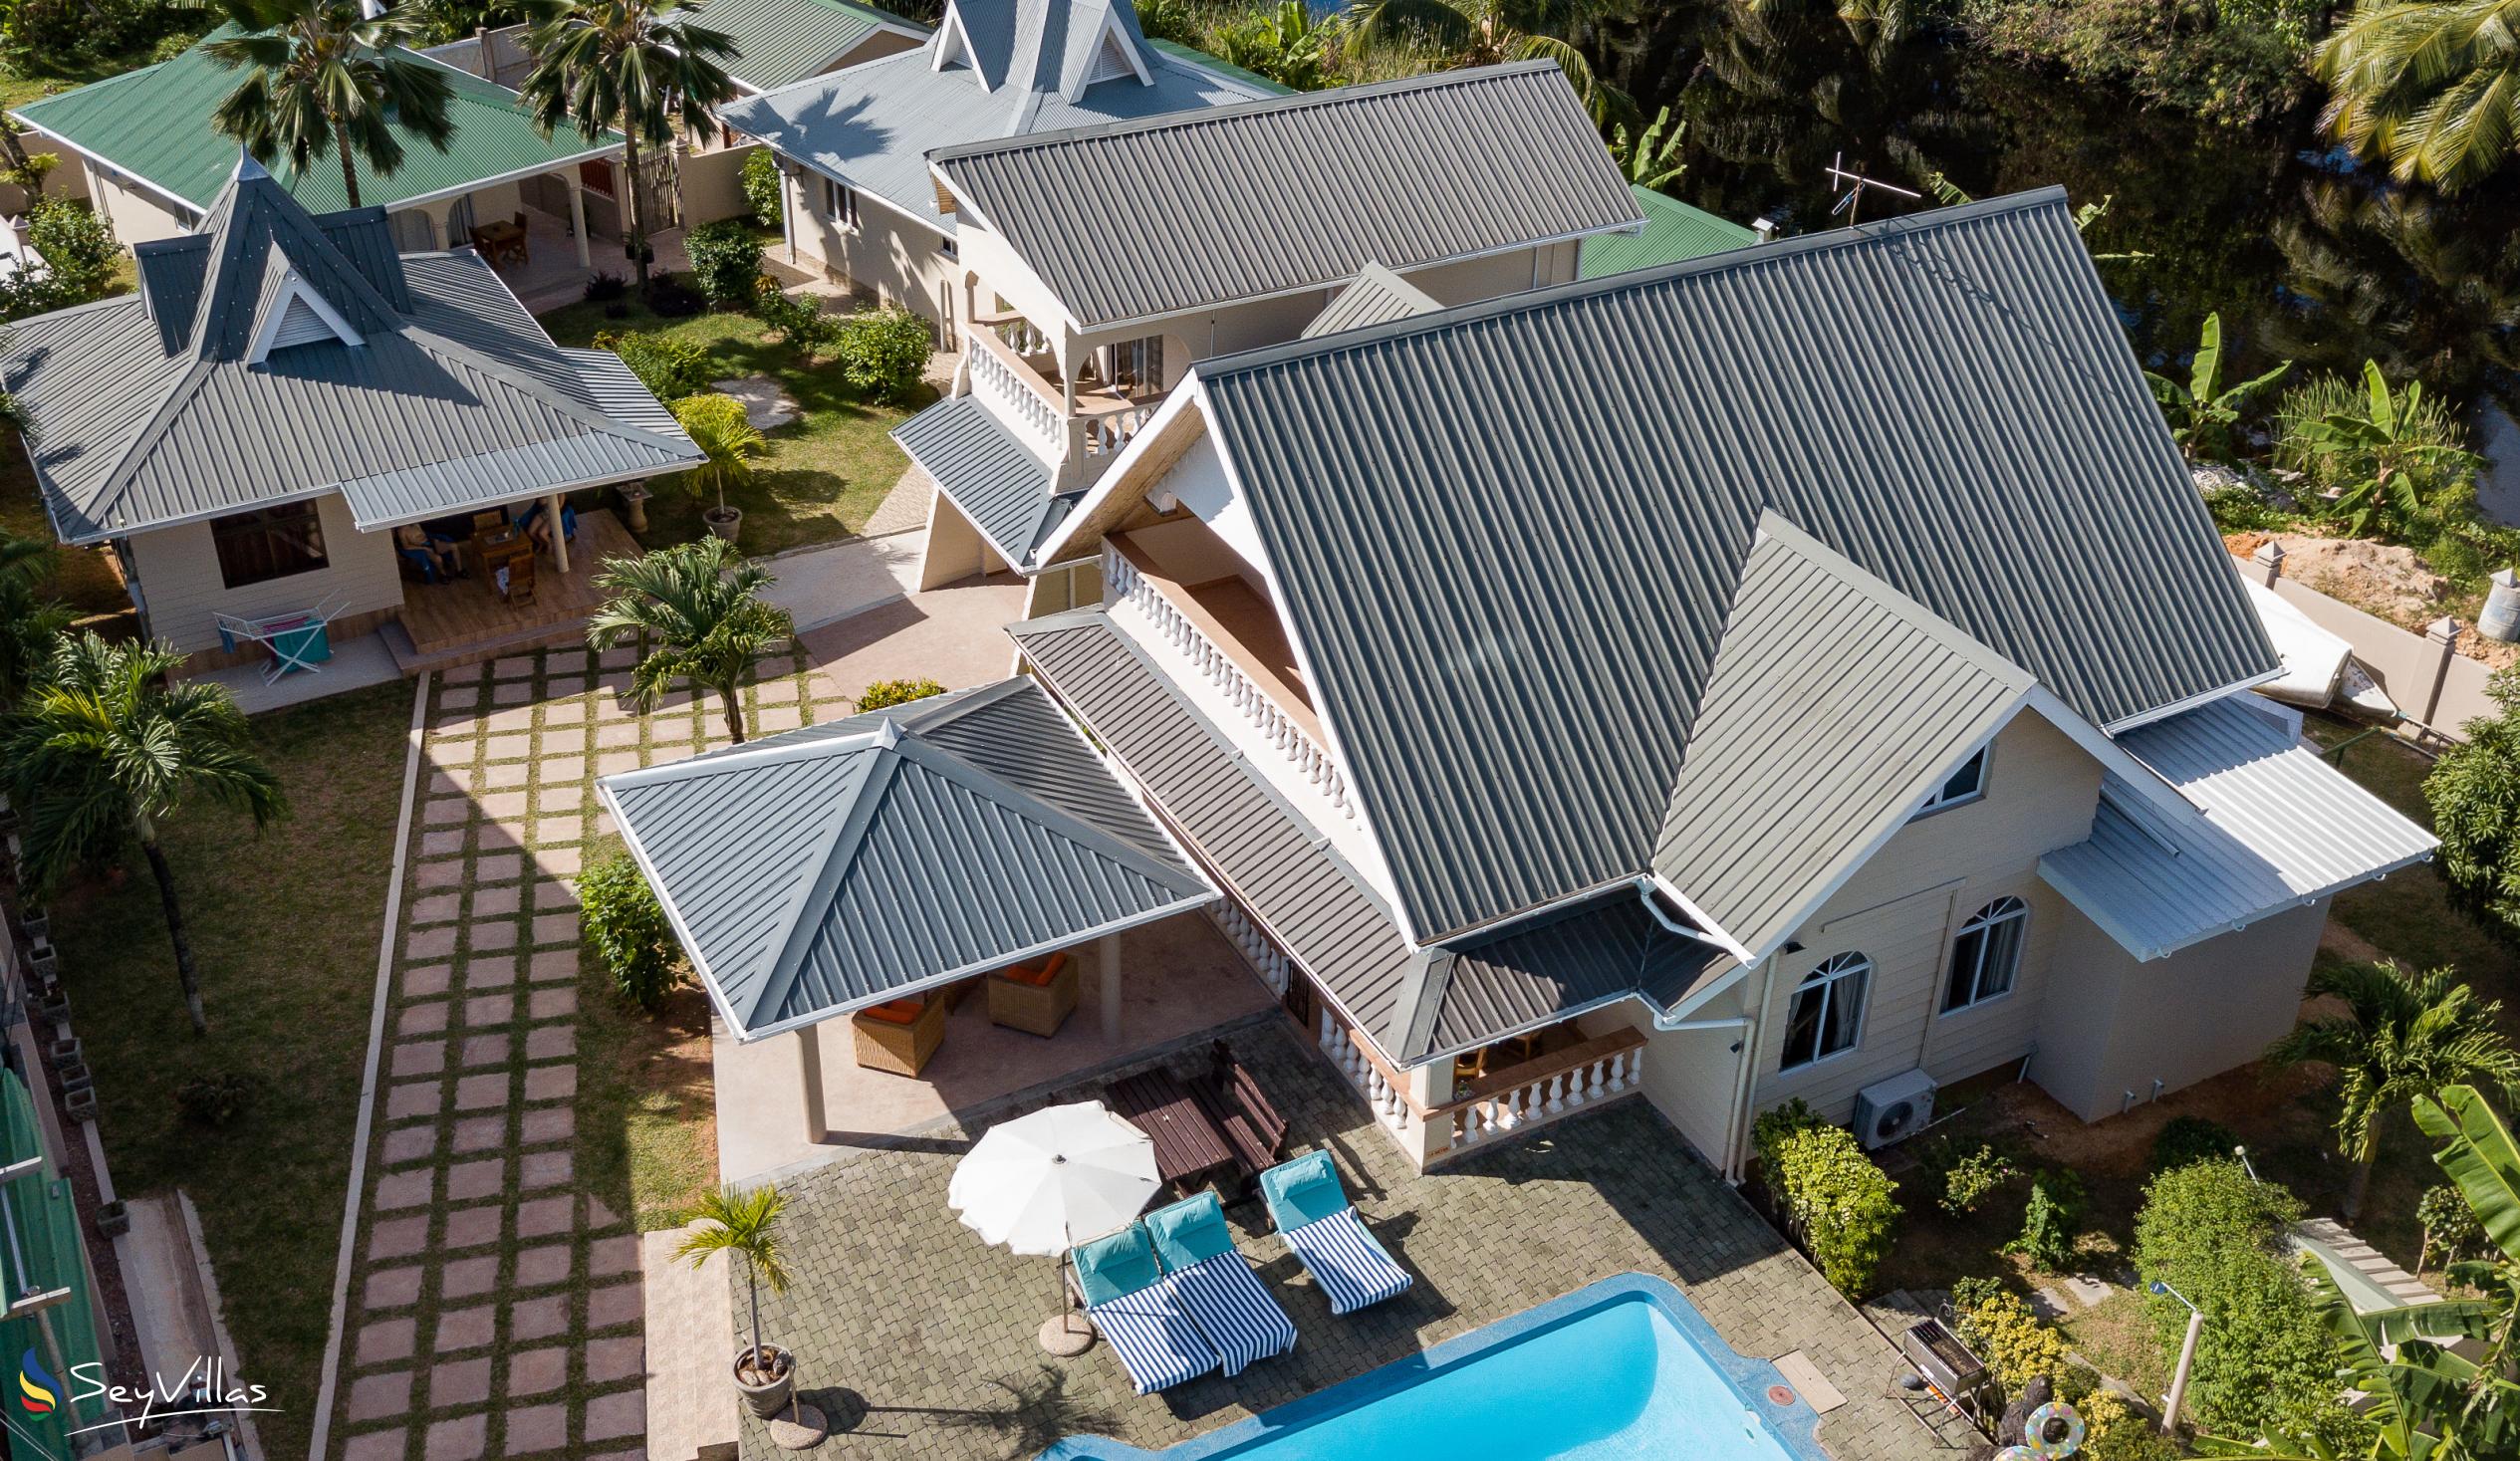 Foto 3: Villa Aya - Extérieur - Praslin (Seychelles)